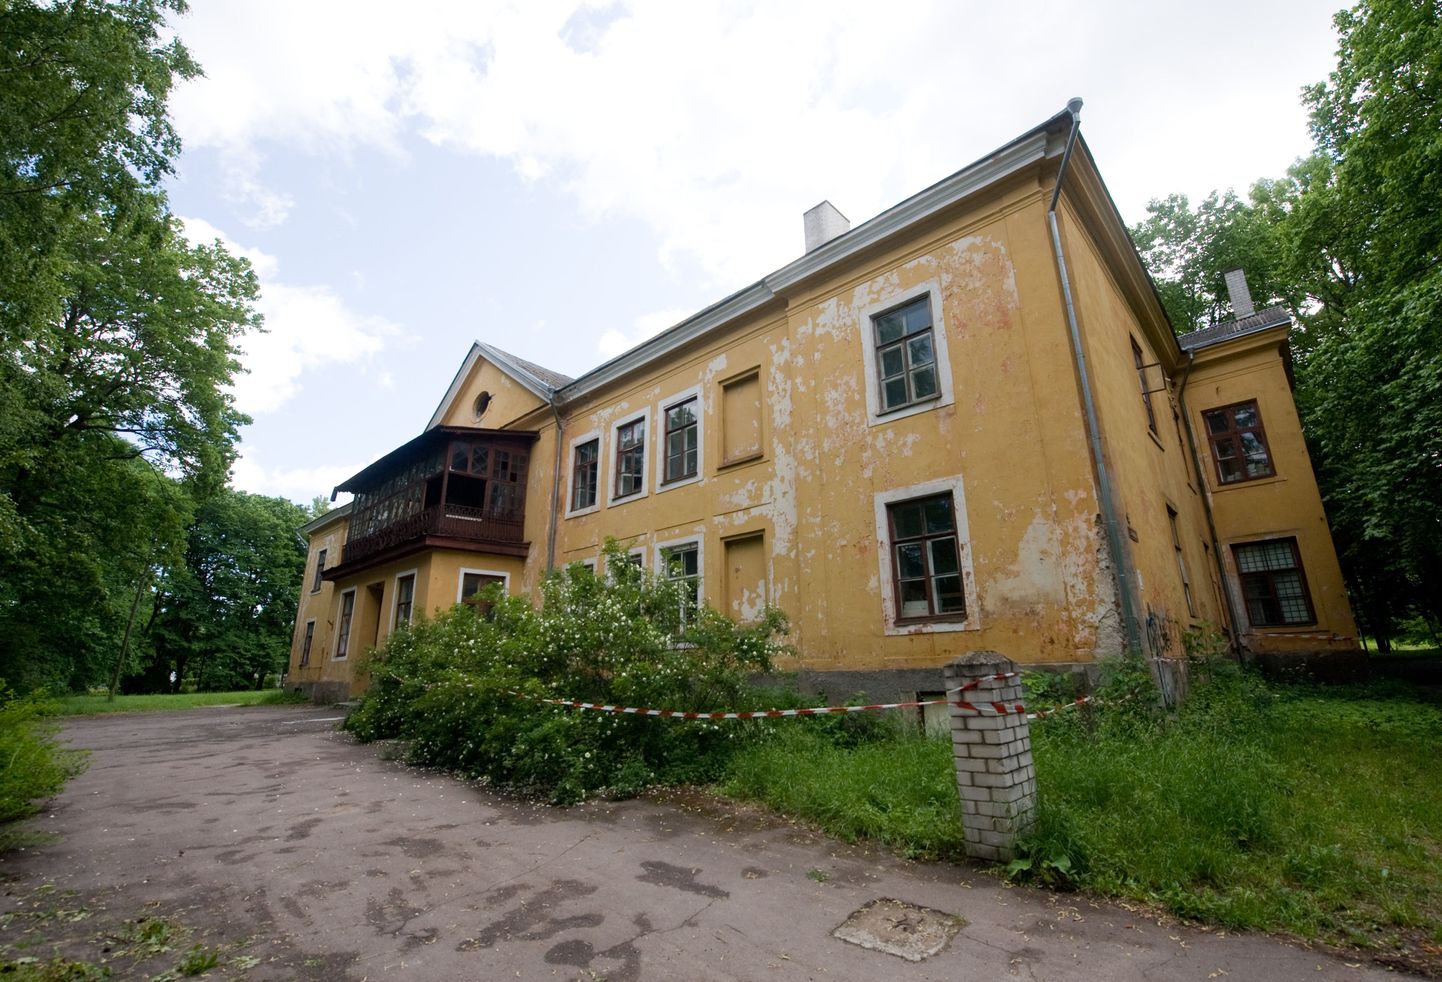 Vene muuseumile eraldatud hoone Kadriorus Koidula 23 seisab tühjana ja on ära lagastatud.